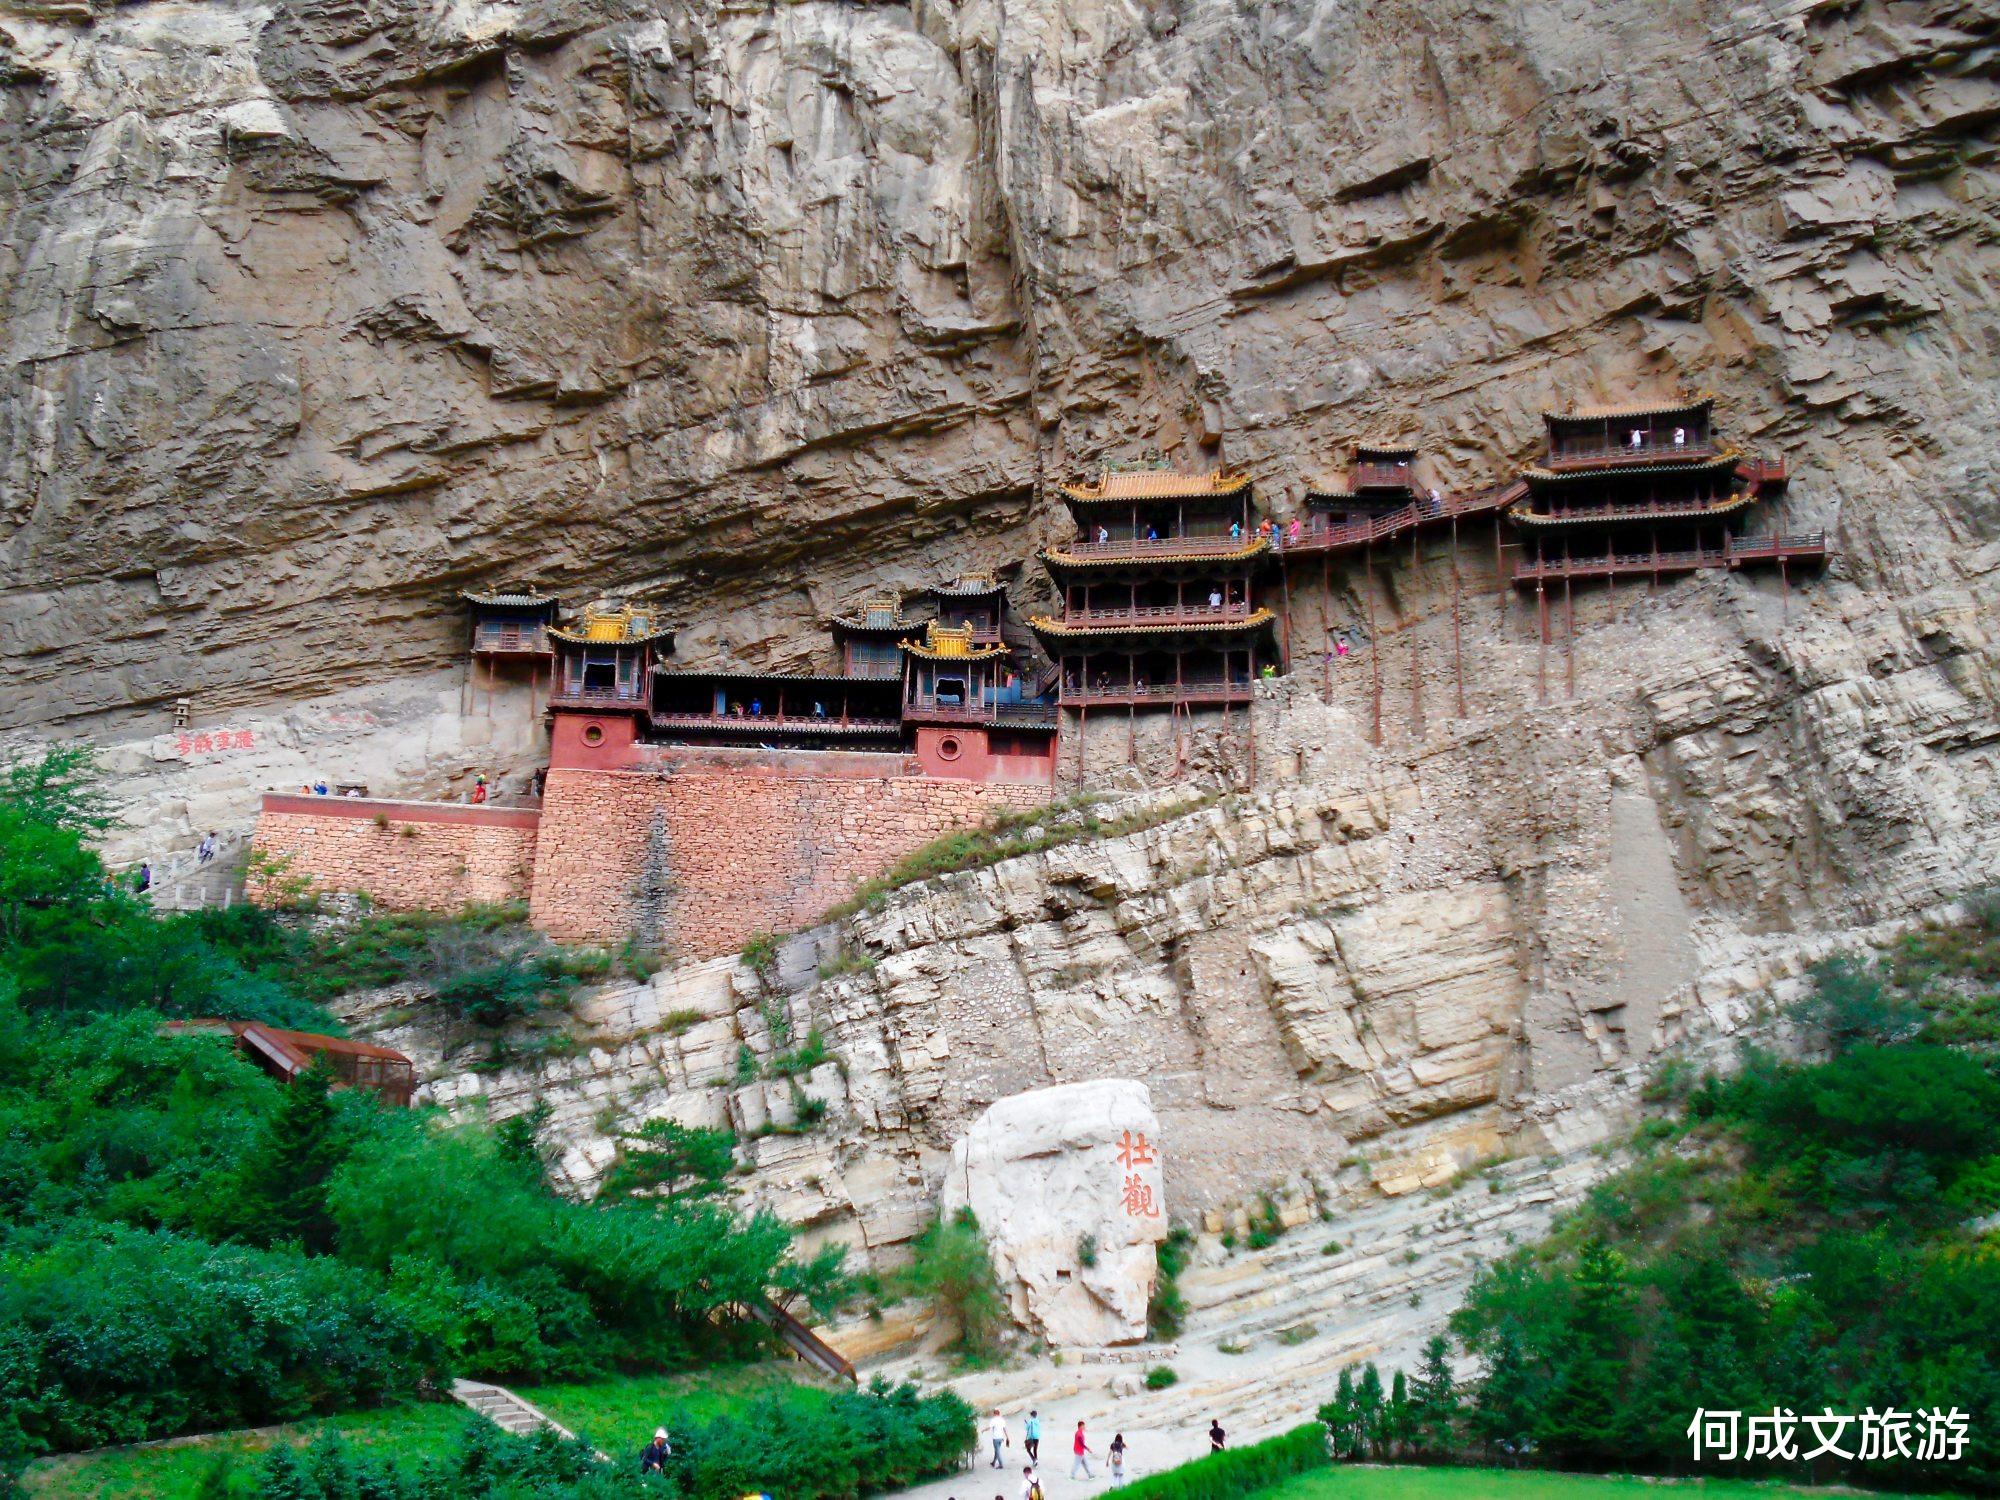 恒山悬空寺: 中国仅存的佛、道、儒三教合一的独特寺庙